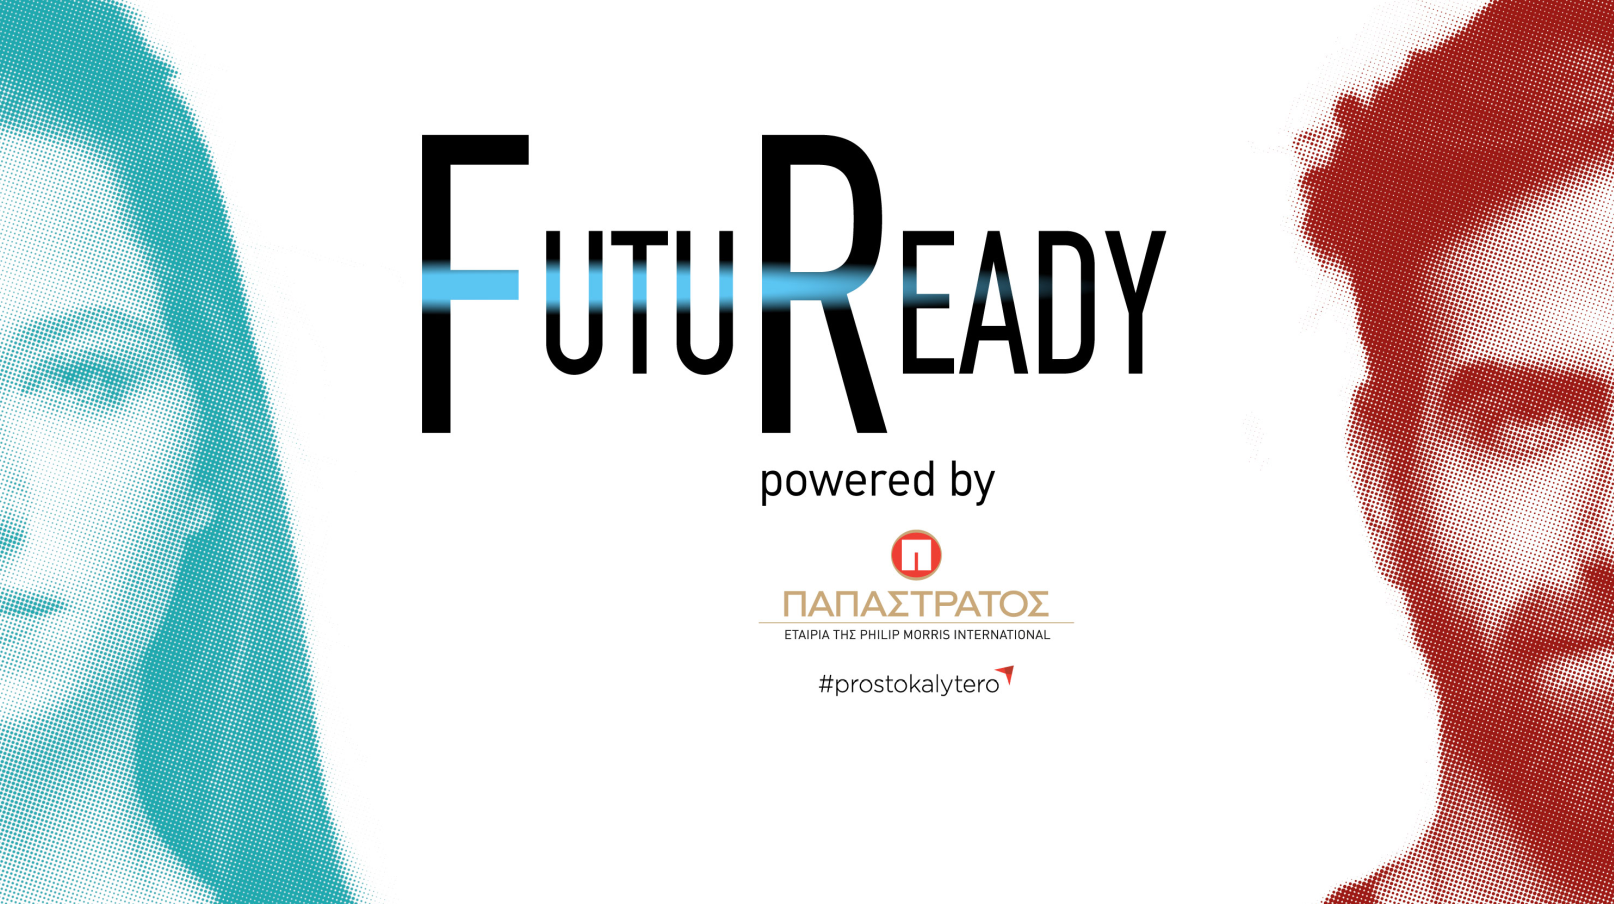 Παπαστράτος: Απευθύνεται στη νέα γενιά με την πρωτοβουλία FutuReady